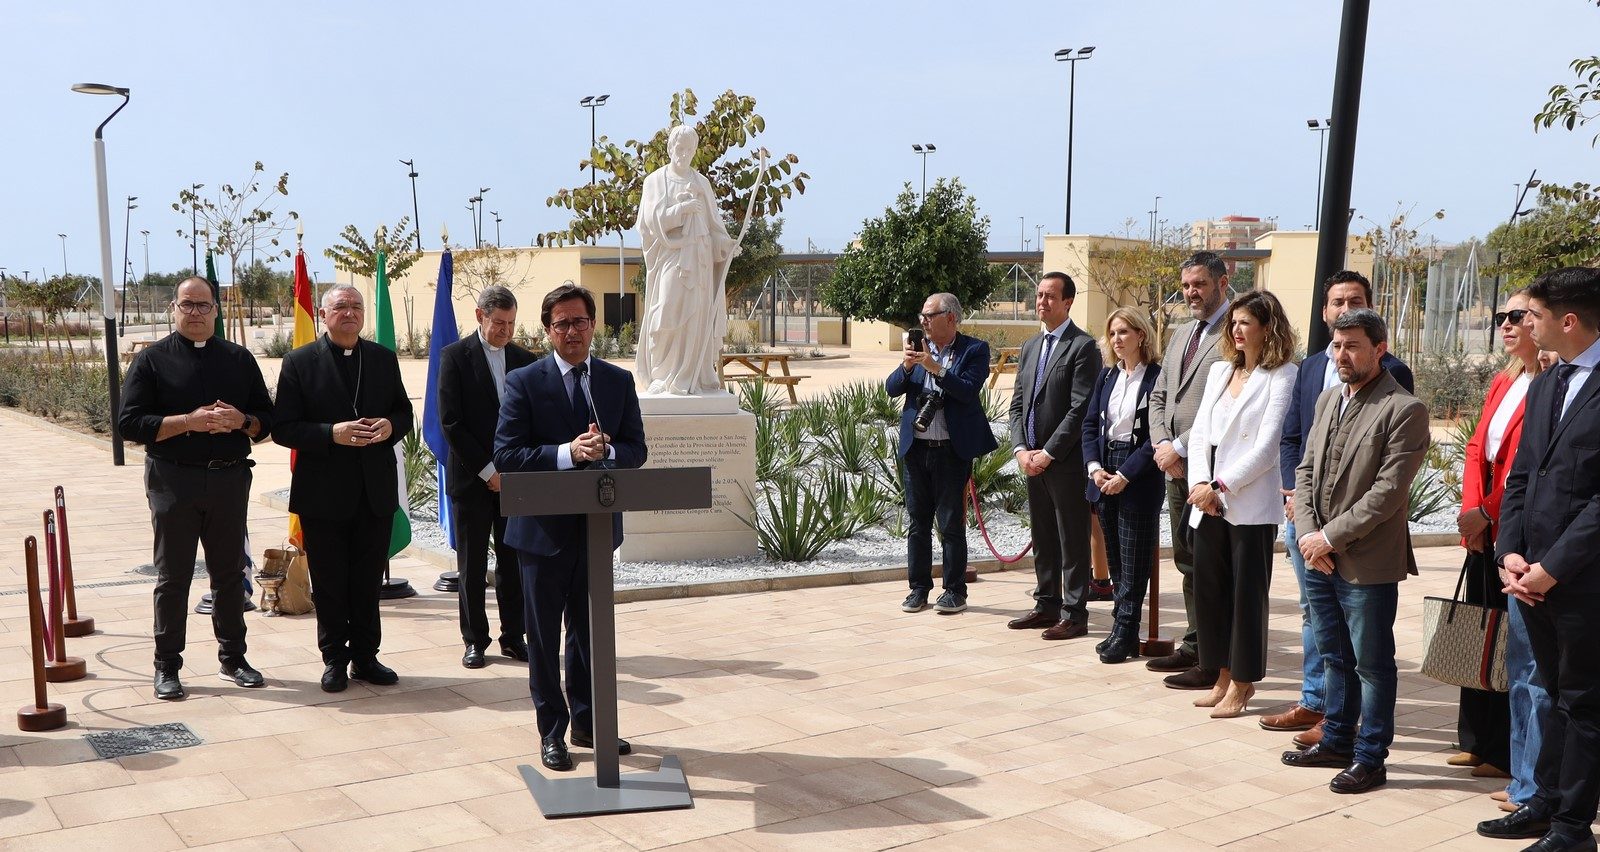 El Parque de San José luce ya una estatua dedicada al santo, Patrón y Custodio de la provincia de Almería